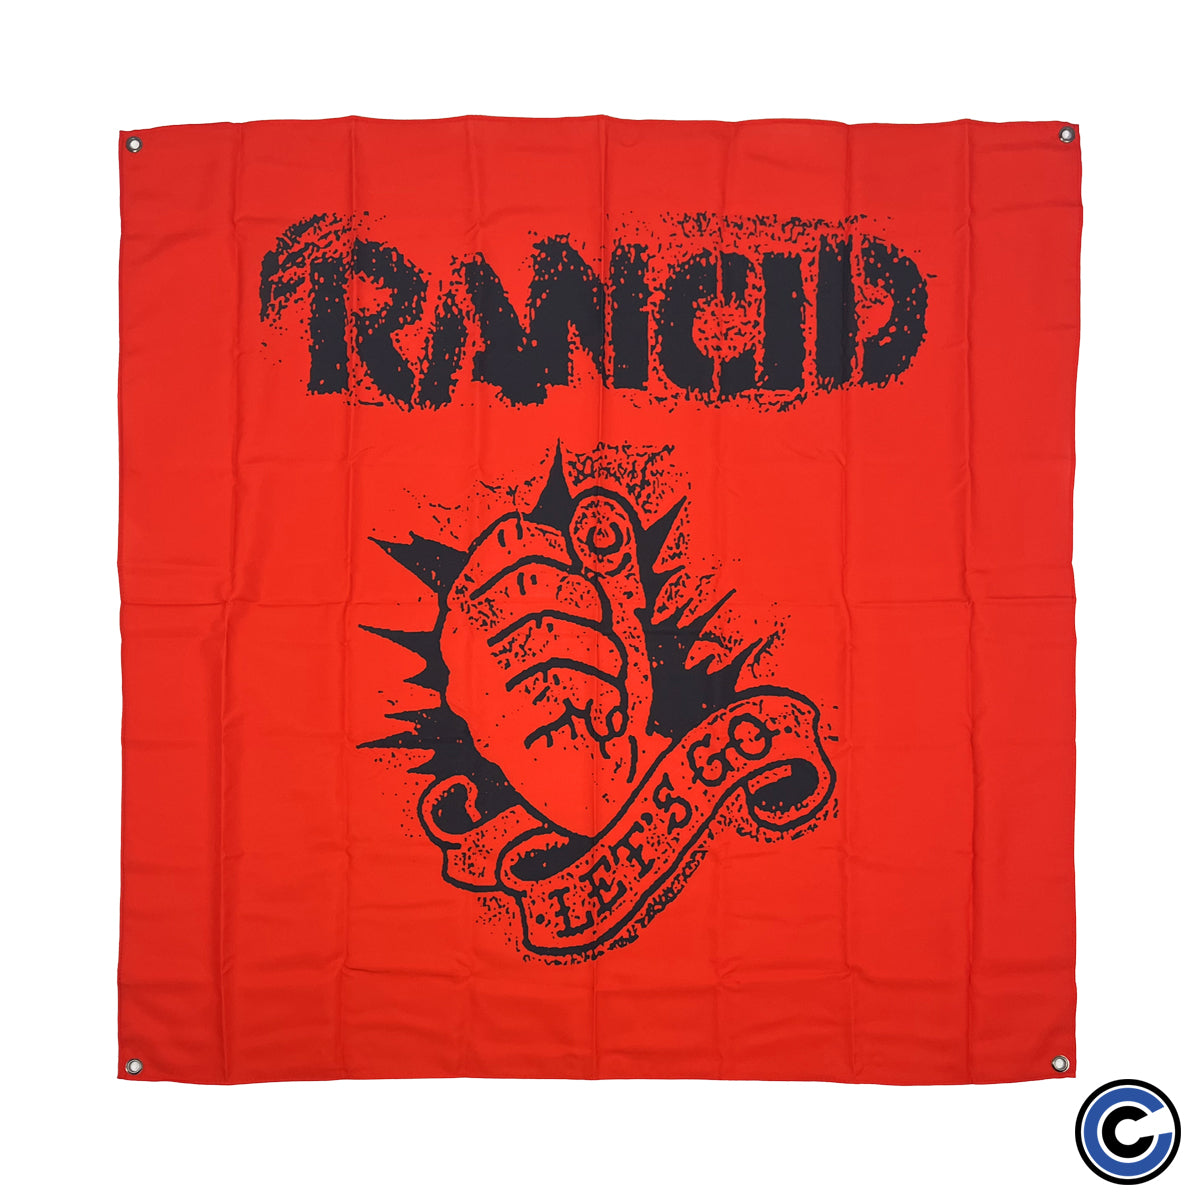 Rancid "Let's Go" Flag